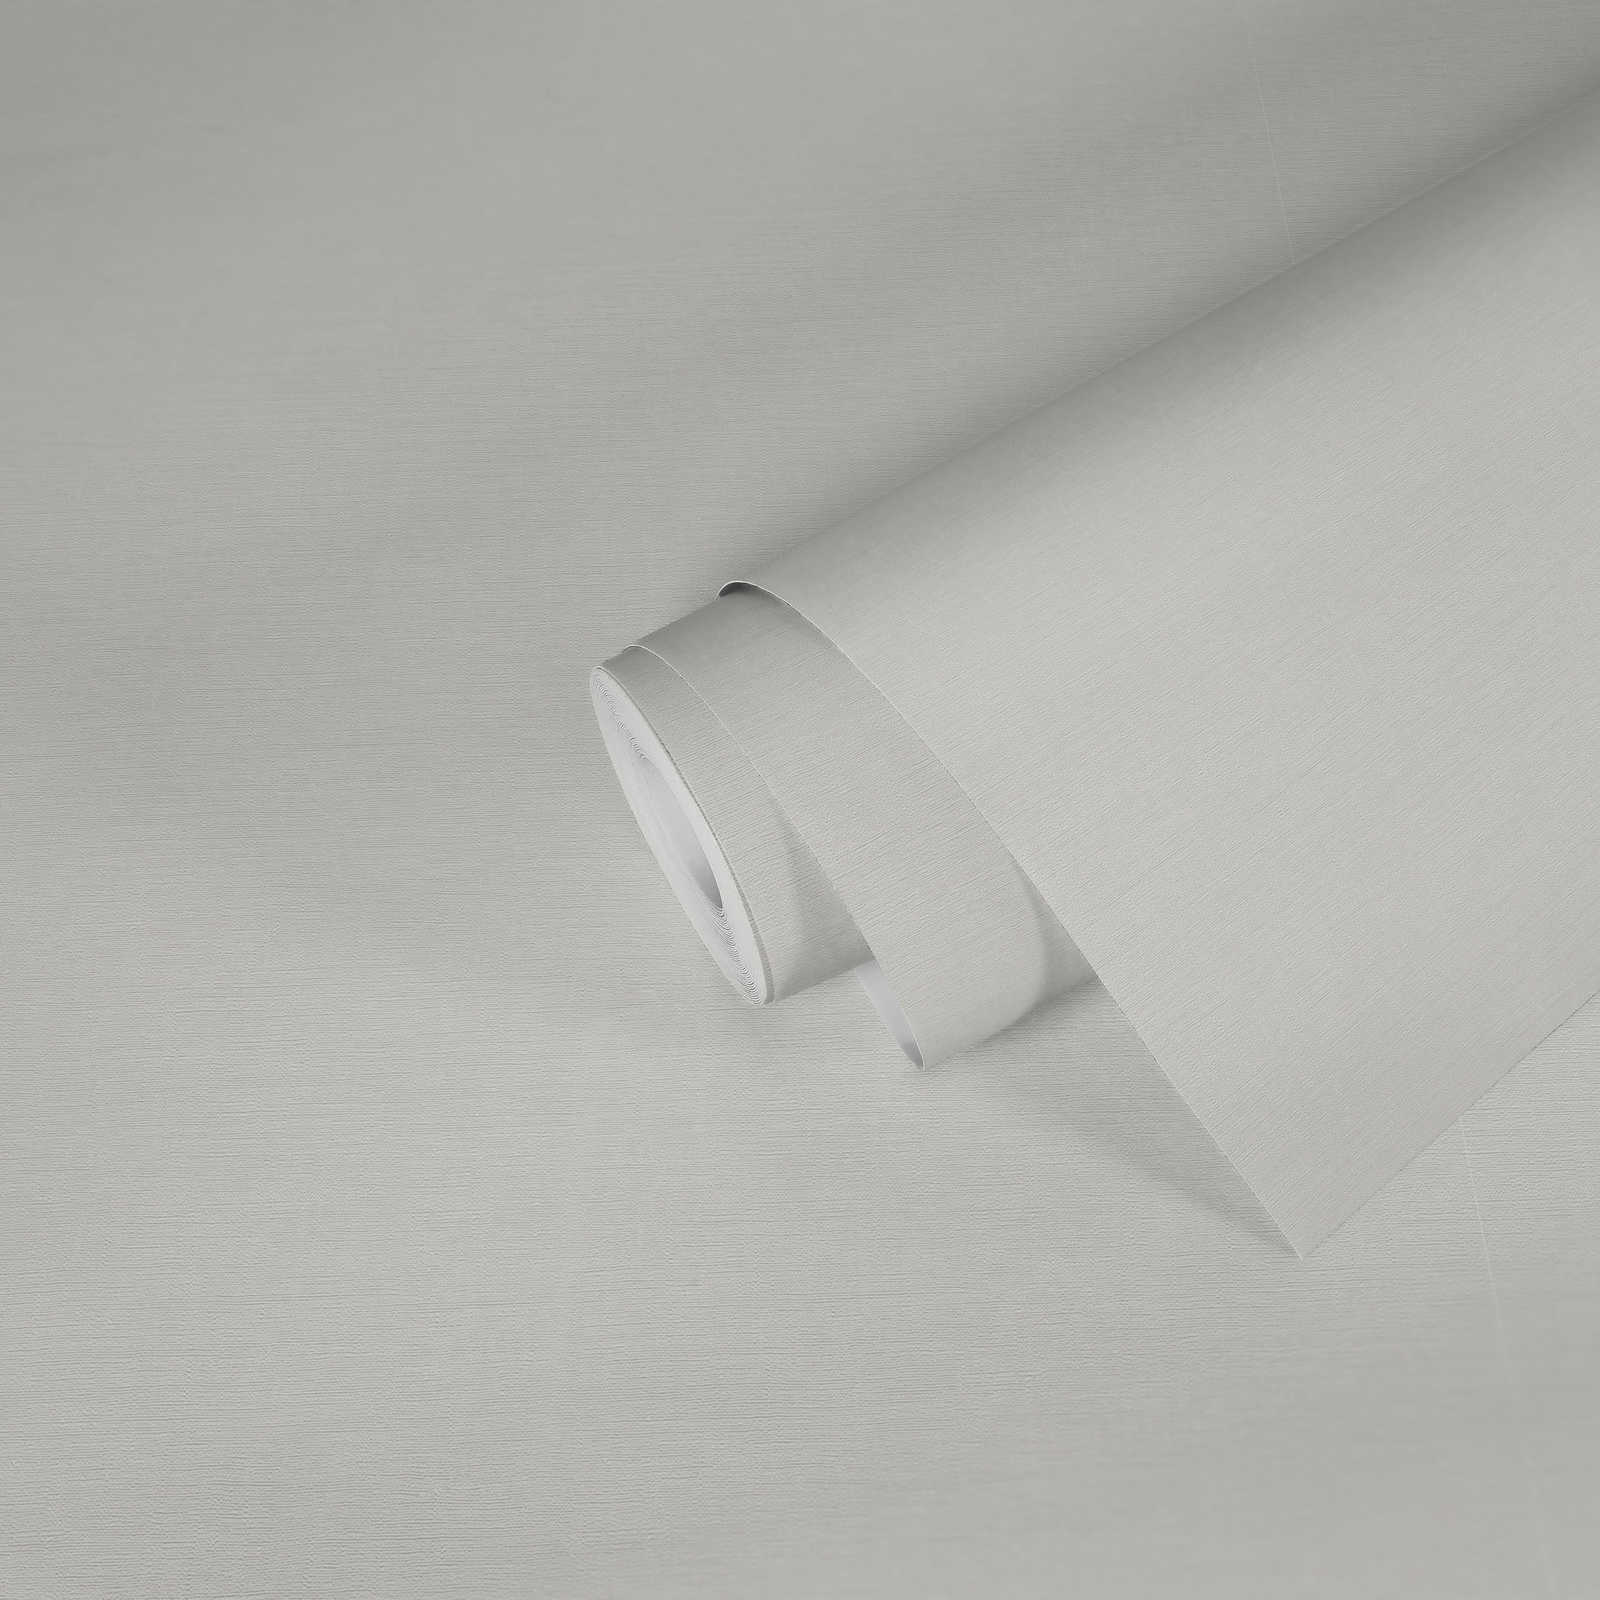             Unitapete in Pastellfarbe mit dezenter Textilstruktur – Weiß
        